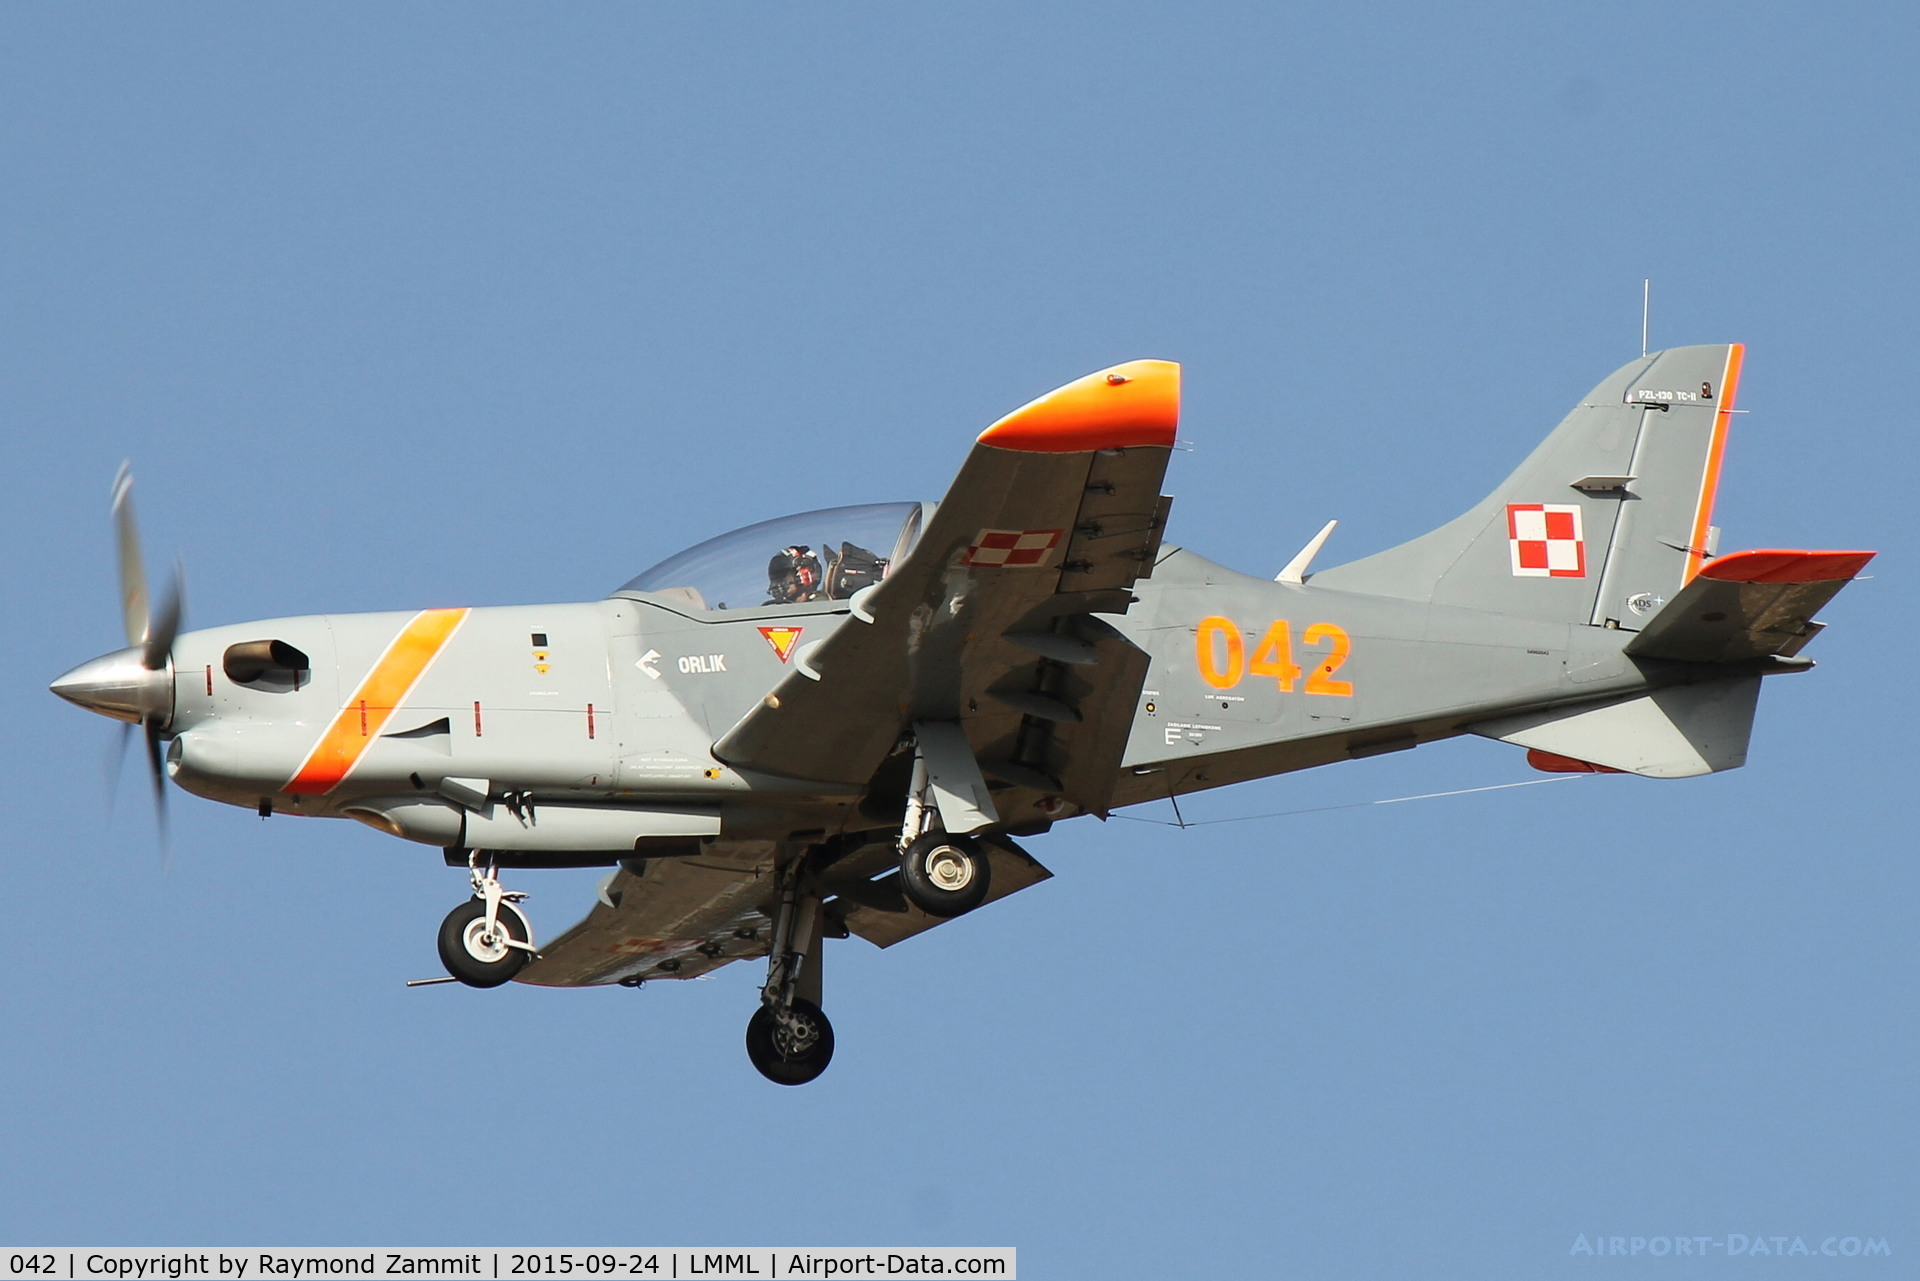 042, PZL-Okecie PZL-130 TCII Orlik C/N 04960042, PZL-130 Orlik 042 Polish Air Force Aerobatic Team